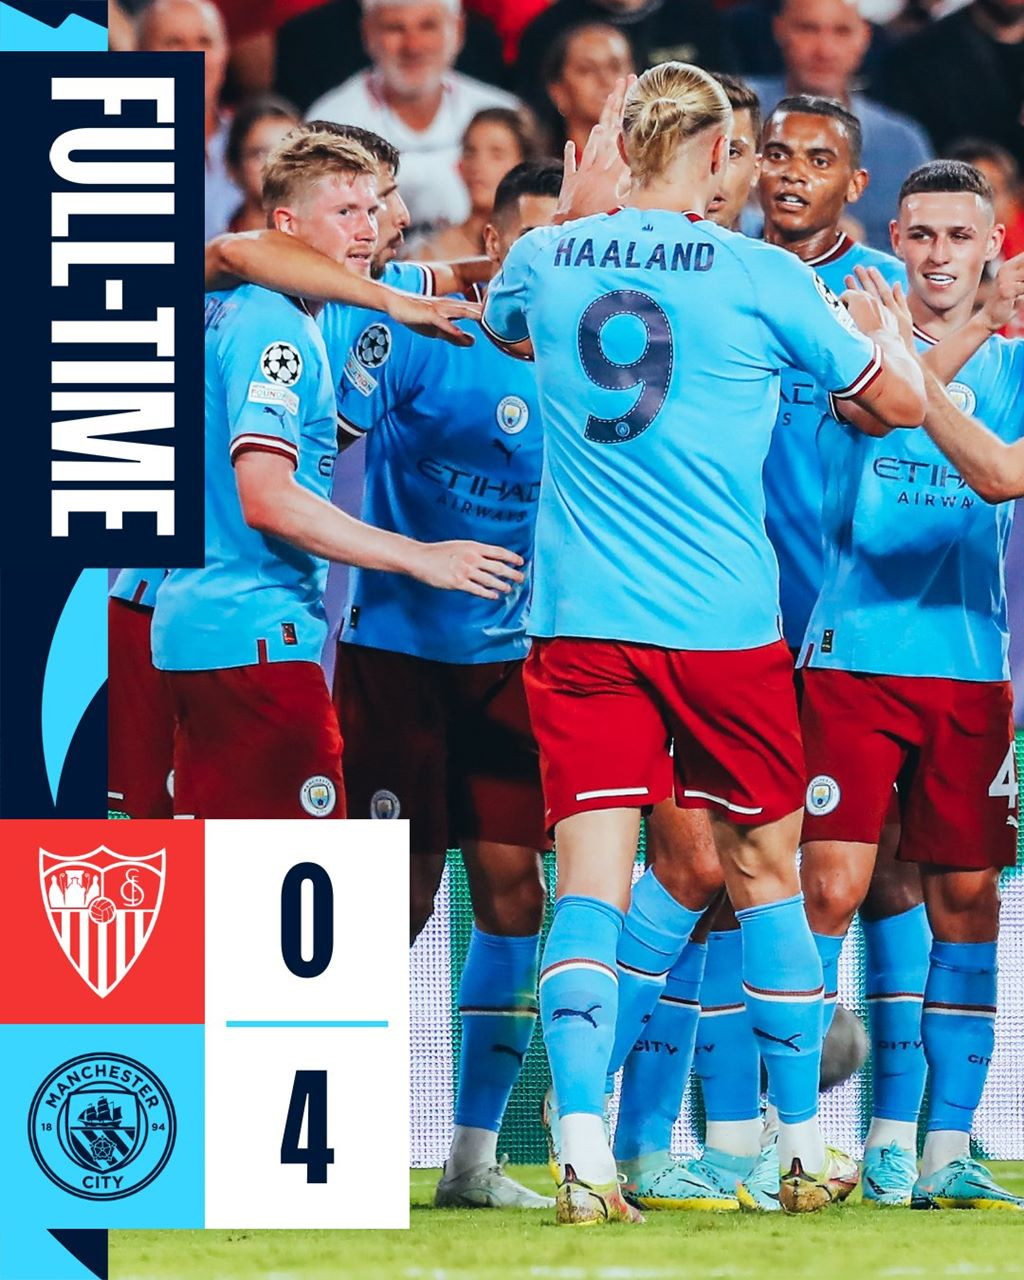 Man City giành chiến thắng tưng bừng 4-0 trước Sevilla. Một sự khởi đầu như mơ của thầy trò HLV Pep Guardiola ở Champions League mùa giải năm nay